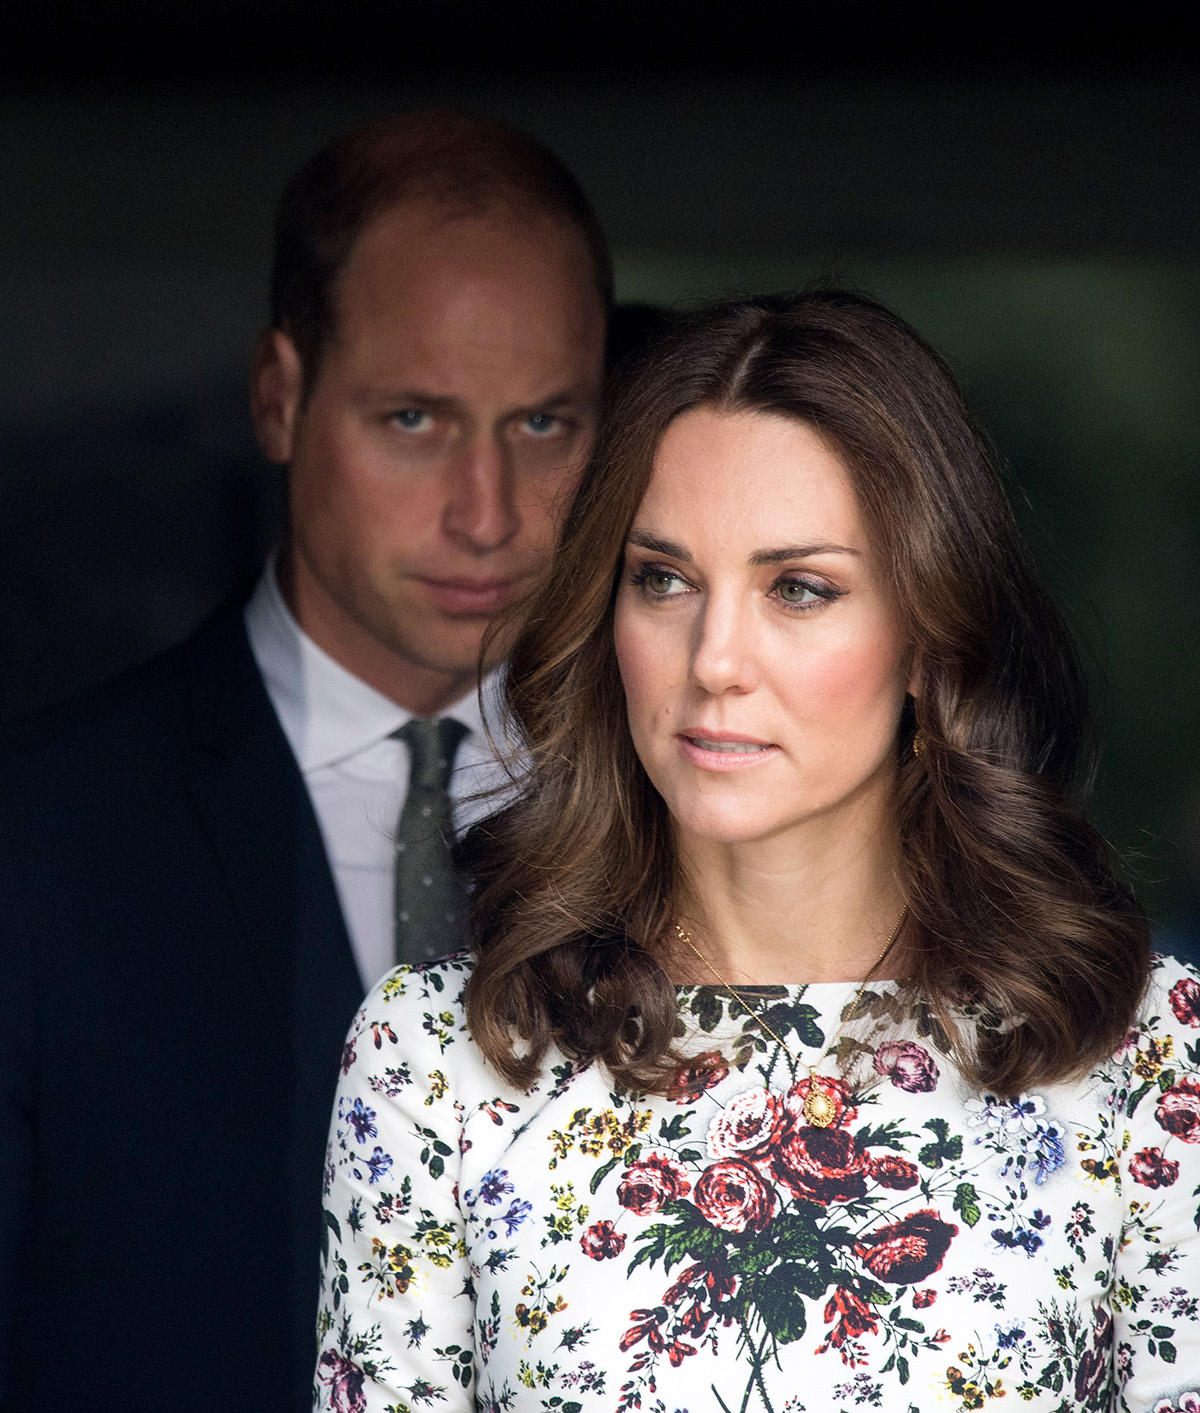 Недовольный взгляд Кейт Миддлтон на принца Уильяма